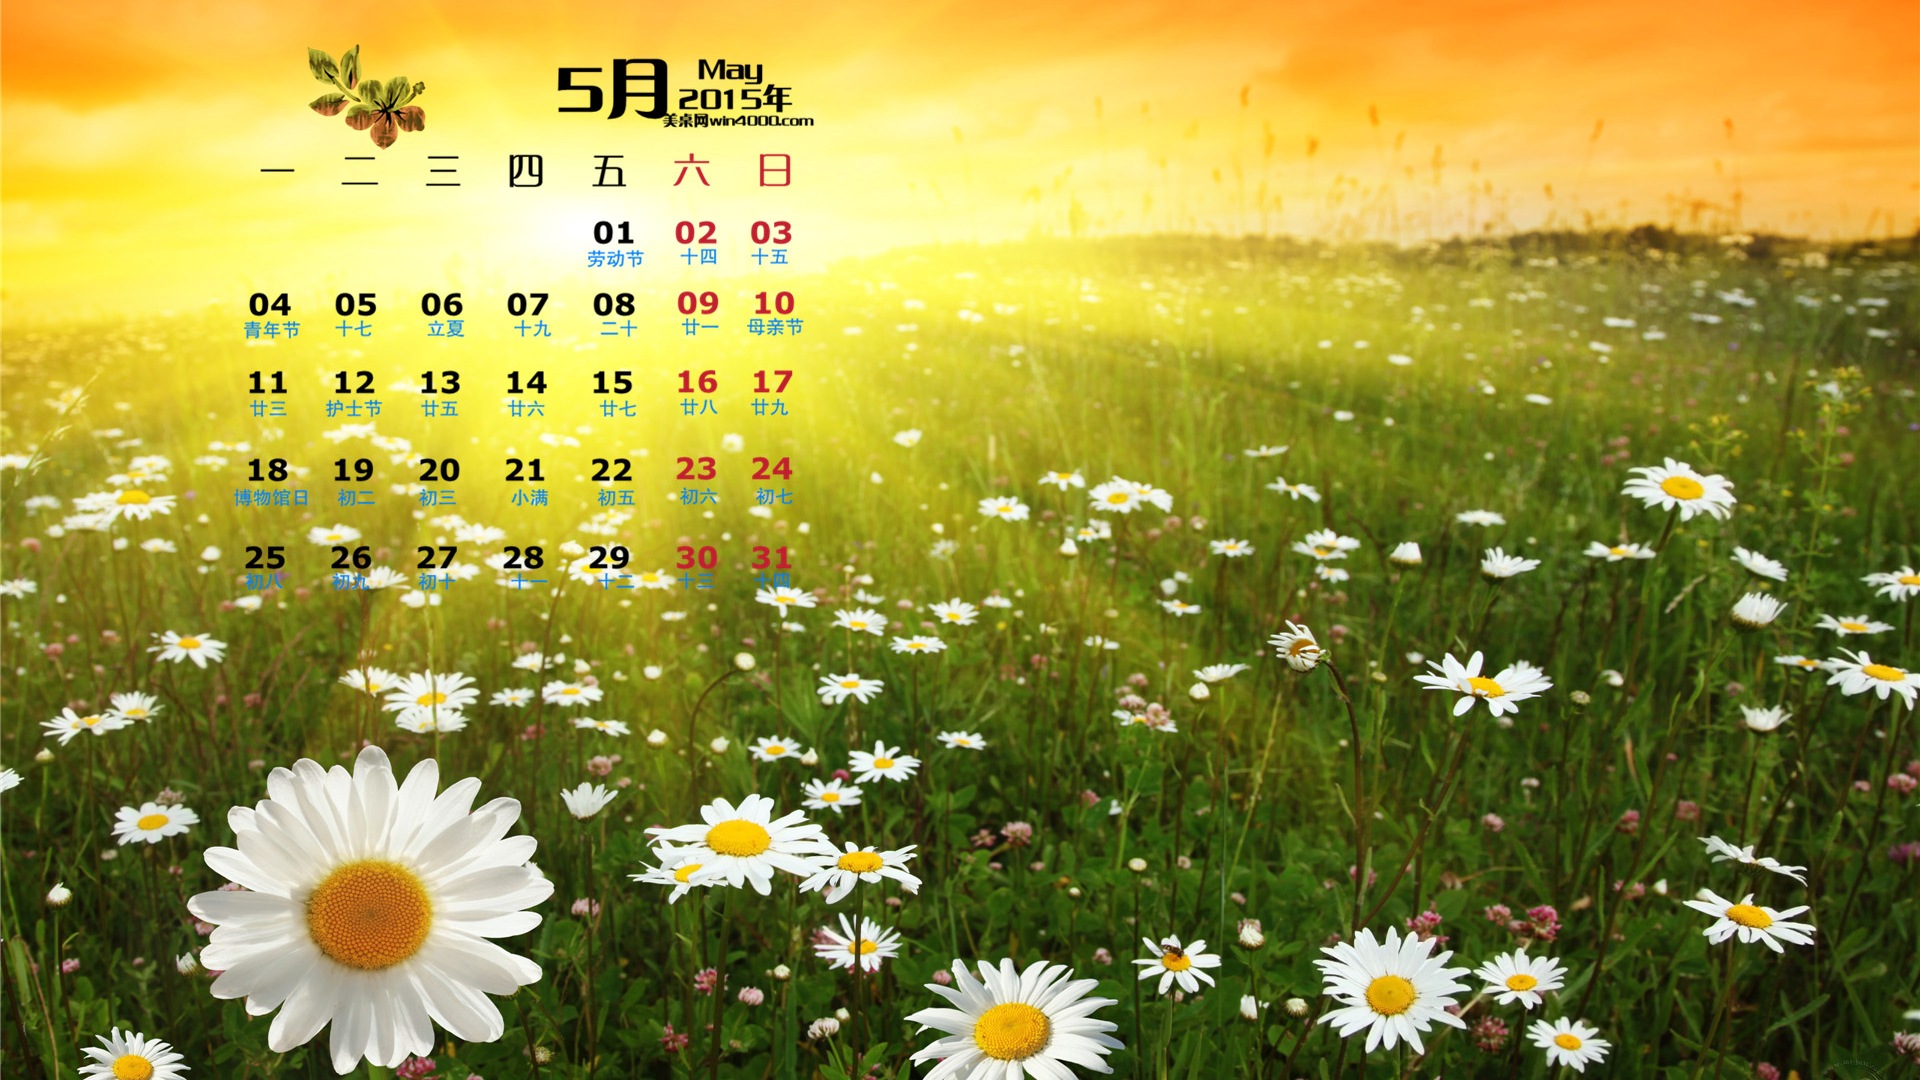 Май 2015 календарный обои (1) #15 - 1920x1080